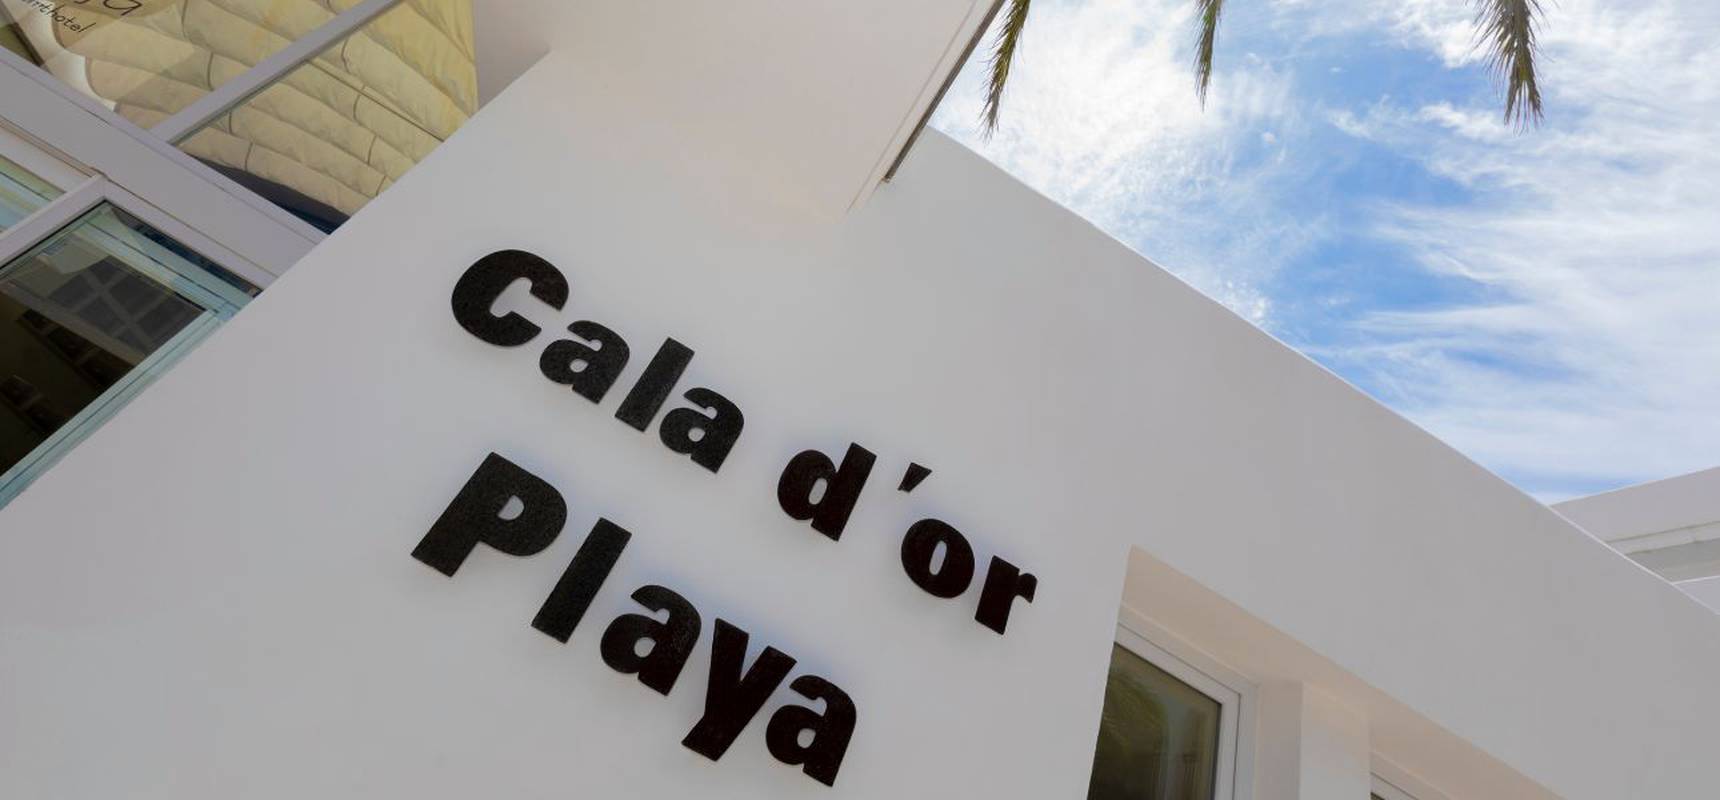  Hotel Cala d’Or Playa Mallorca